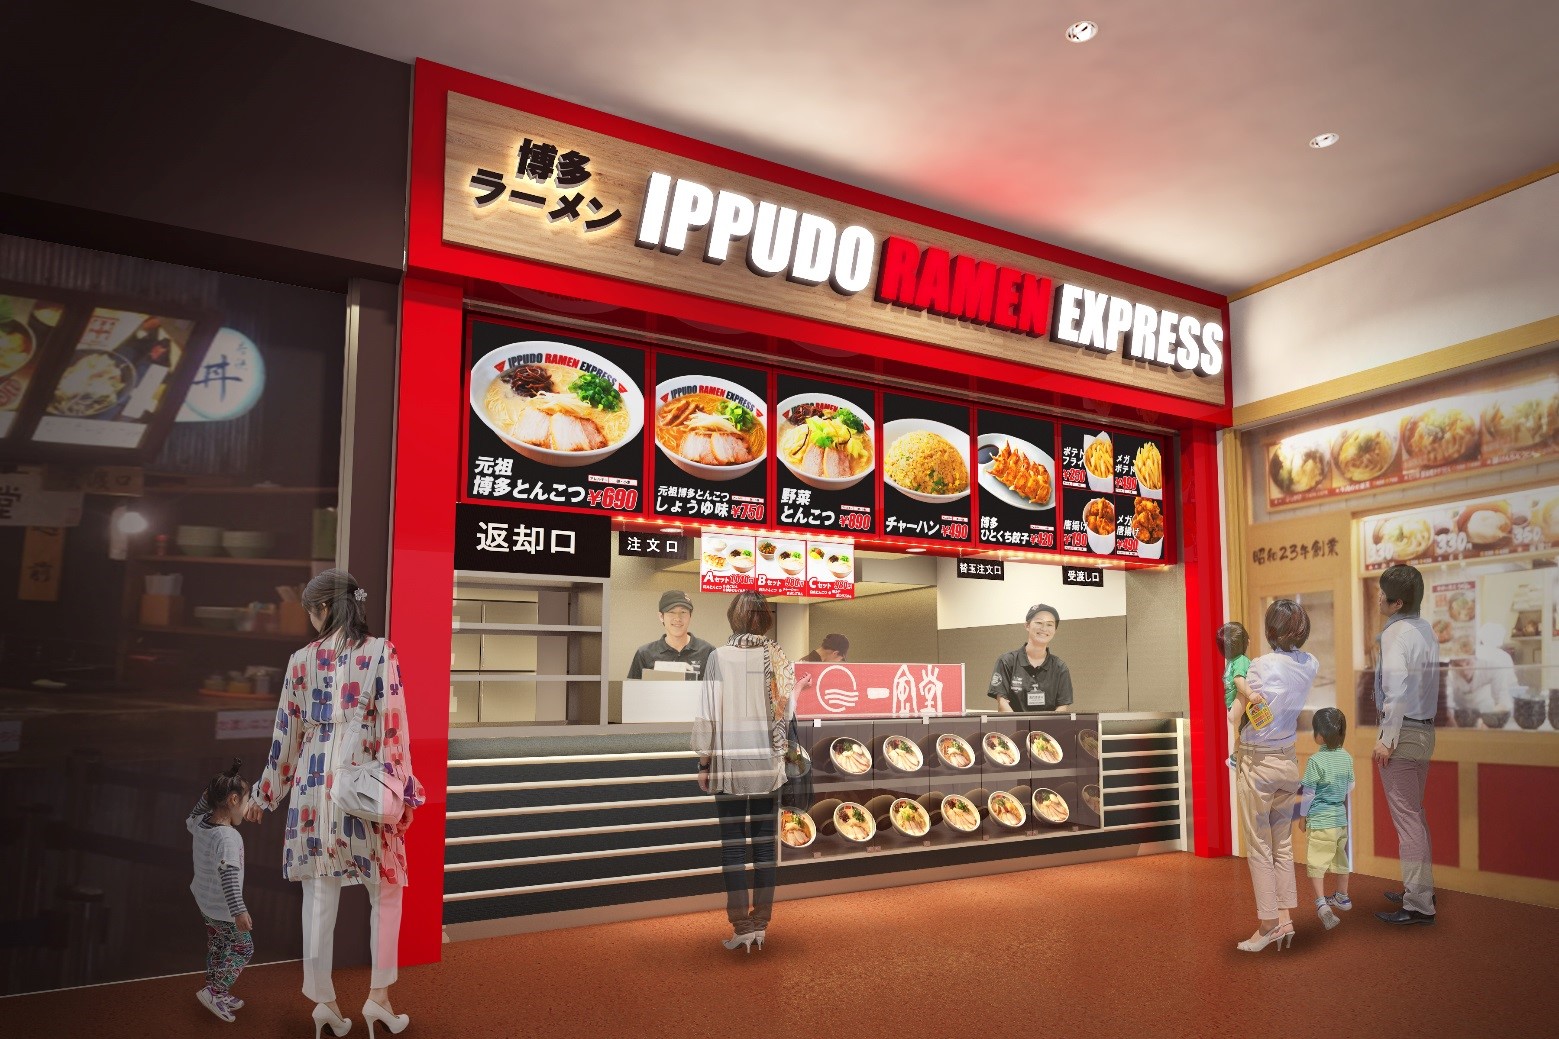 栃木県初出店 一風堂のセルフサービス業態 Ippudo Ramen Express が 佐野プレミアム アウトレット に5月2日オープン 株式会社力の源ホールディングスのプレスリリース